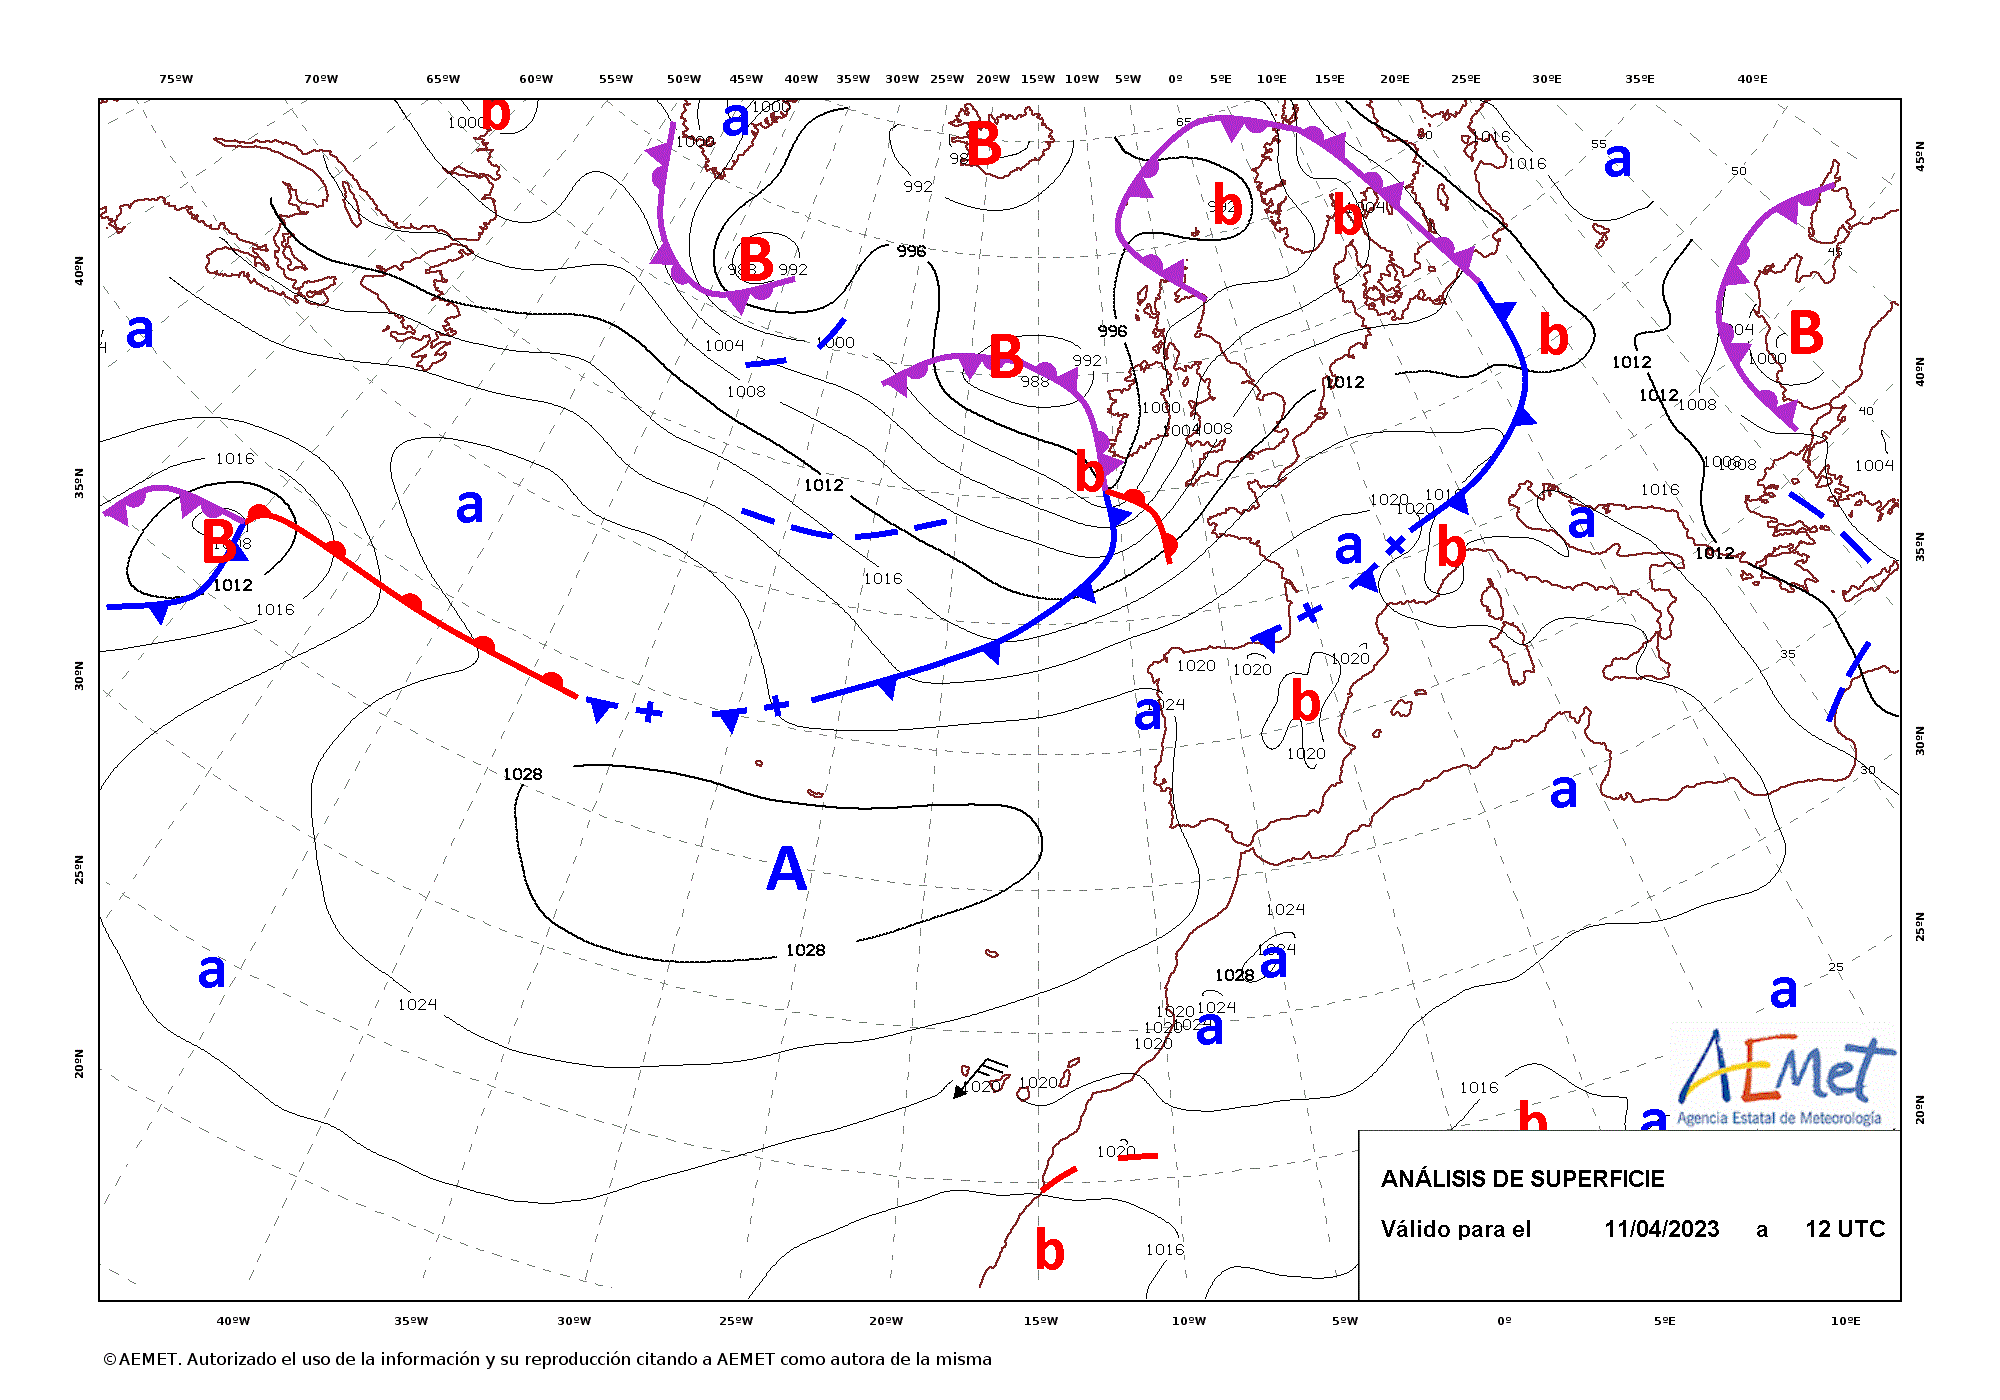 Animación de los mapas de análisis de superficie cada 12 horas entre las 12 UTC del día 12 de abril y las 12 UTC del día 13 de abril de 2023. El ciclo de vida de la borrasca duró algo más de 48 horas desde su formación en el Atlántico hasta su desaparición en el mar del Norte.